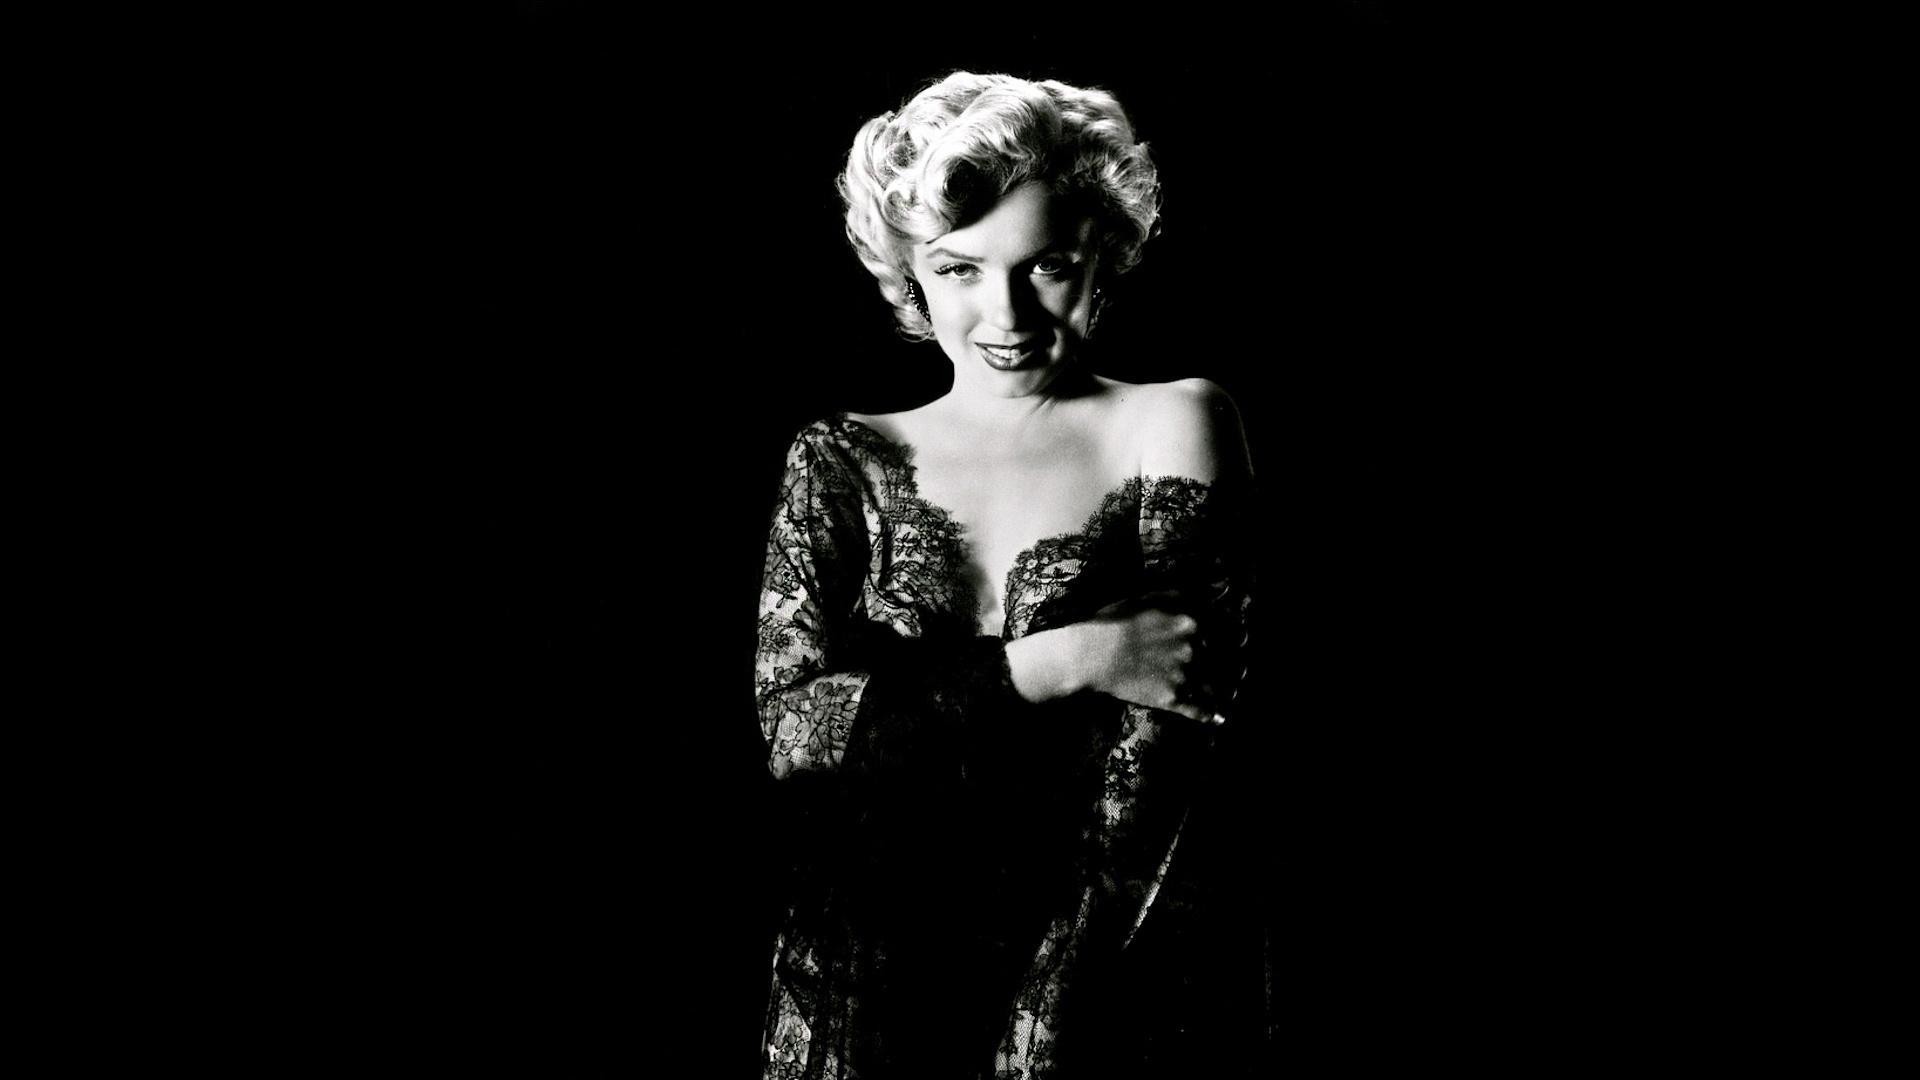 Free Download Fond Ecran Celebrite Marilyn Monroe Noir Et